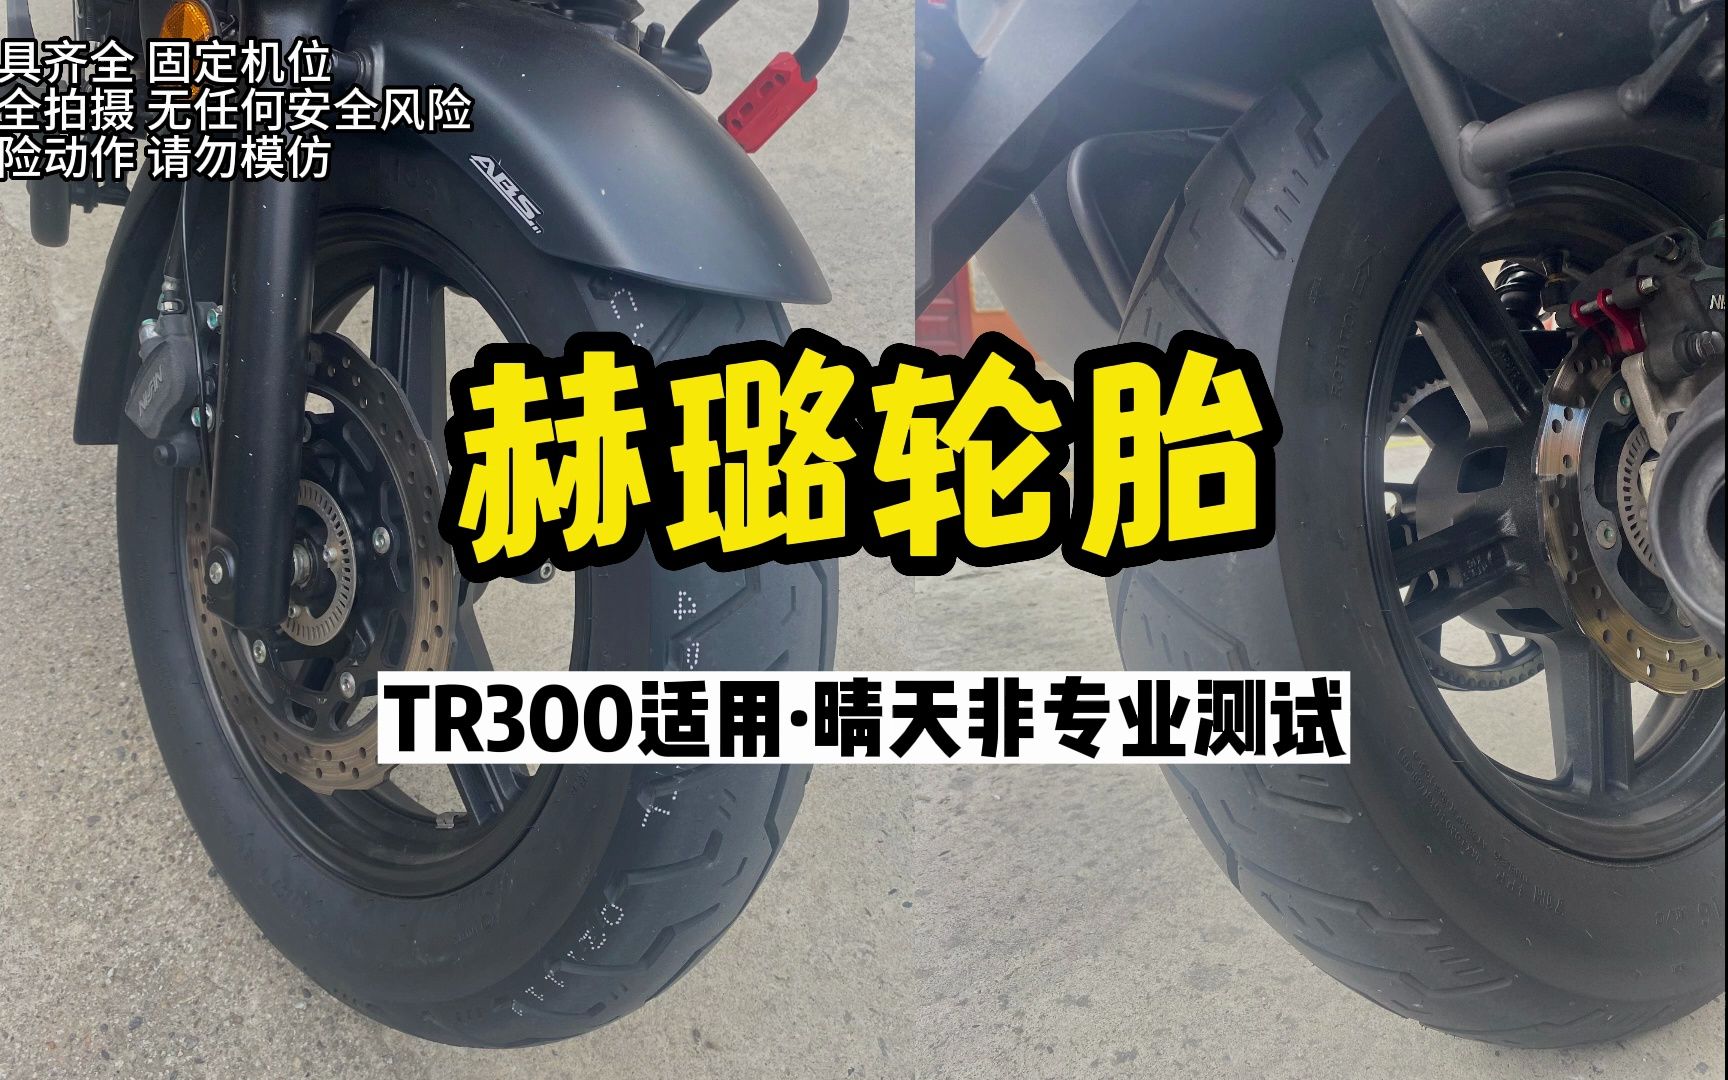 TR300新胎晴天路试（非专业测试）赫璐这款国产胎晴天抓地很强，不愧是远星高端子品牌。